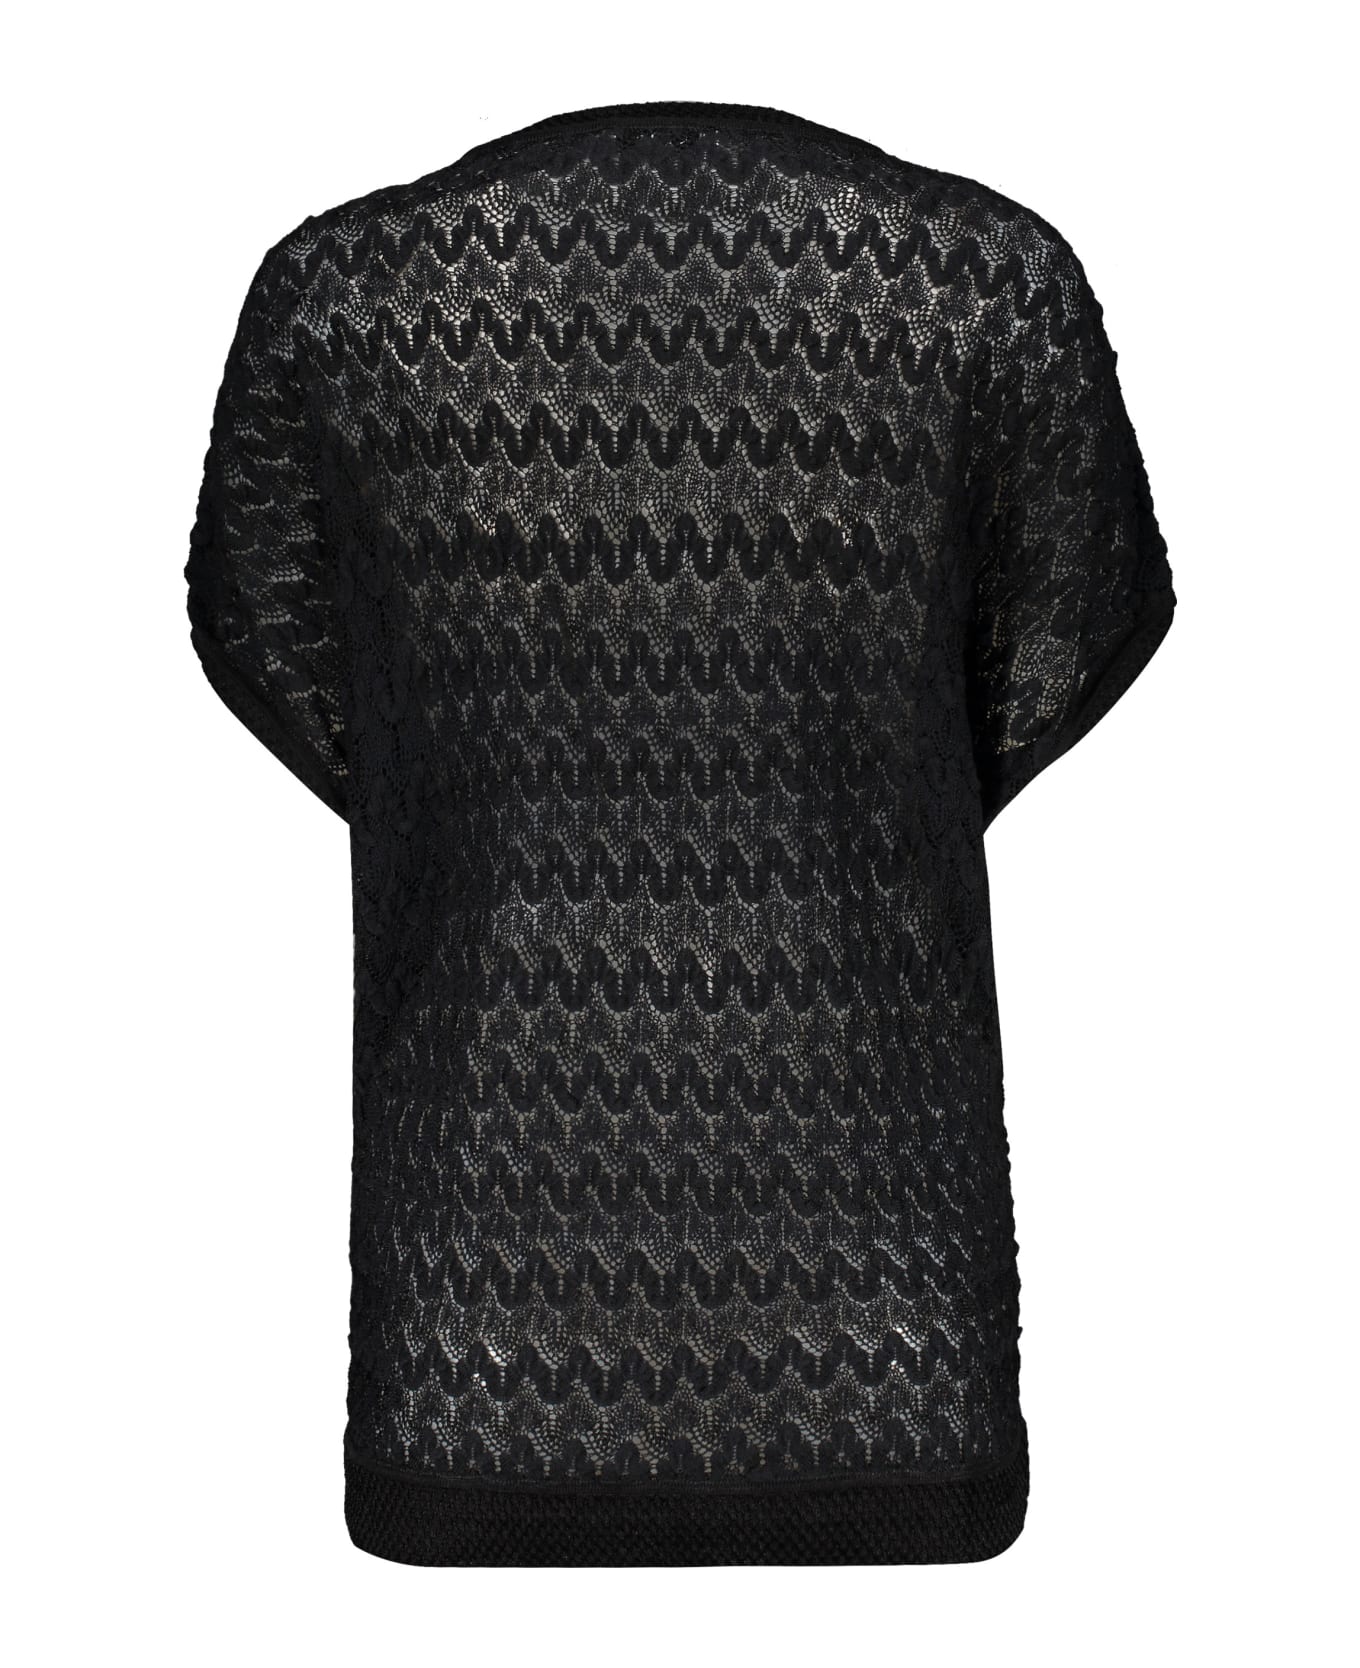 M Missoni Knitted Top - black ニットウェア